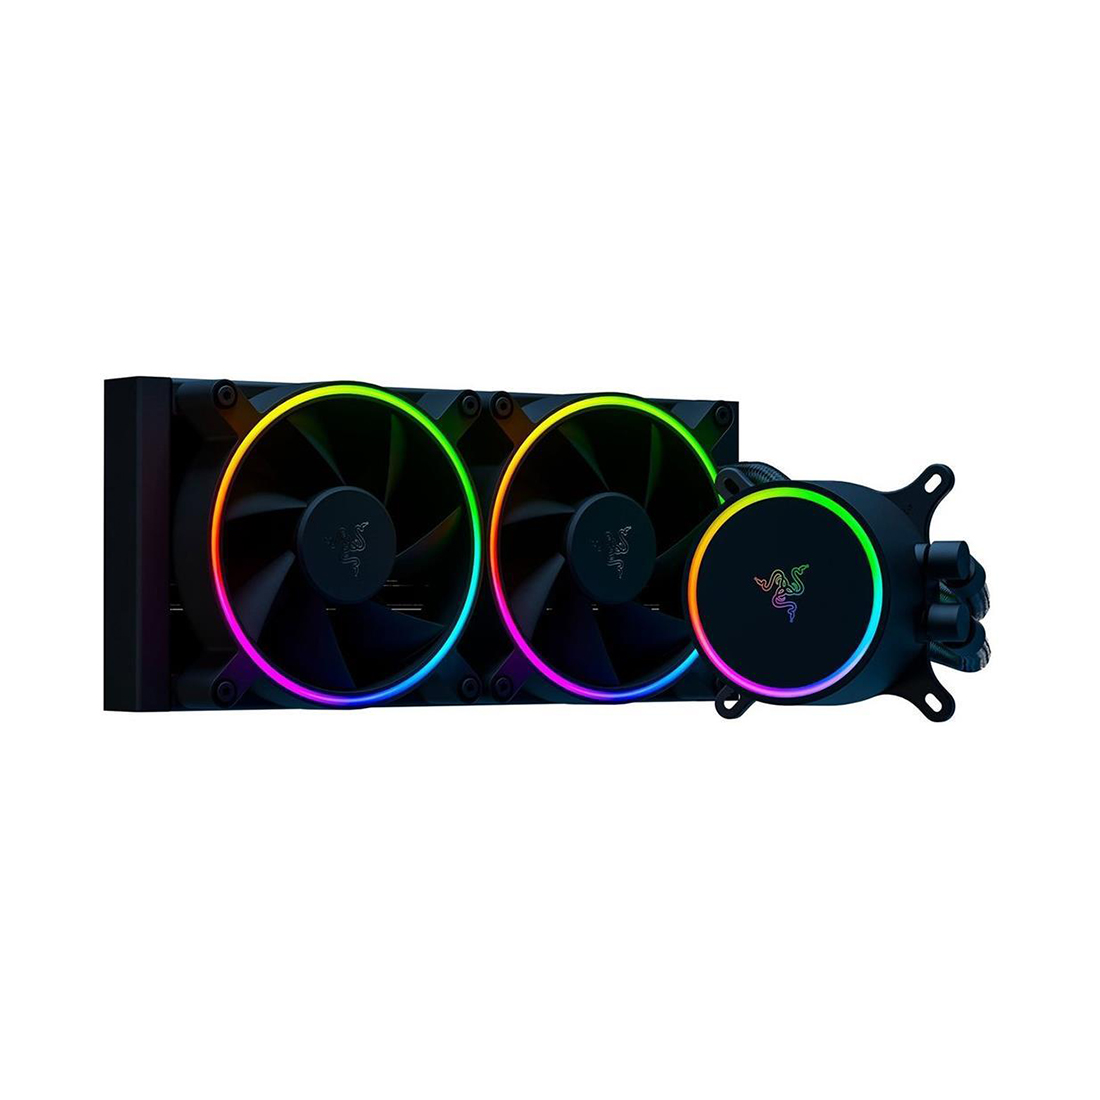 Кулер с водяным охлаждением, Razer, Hanbo Chroma RGB AIO Liquid Cooler (aRGB Pump Cap), RC21-01770100-R3M1, 240 мм, Подсветка RGB, Габариты 275x123x30 мм, Чёрный